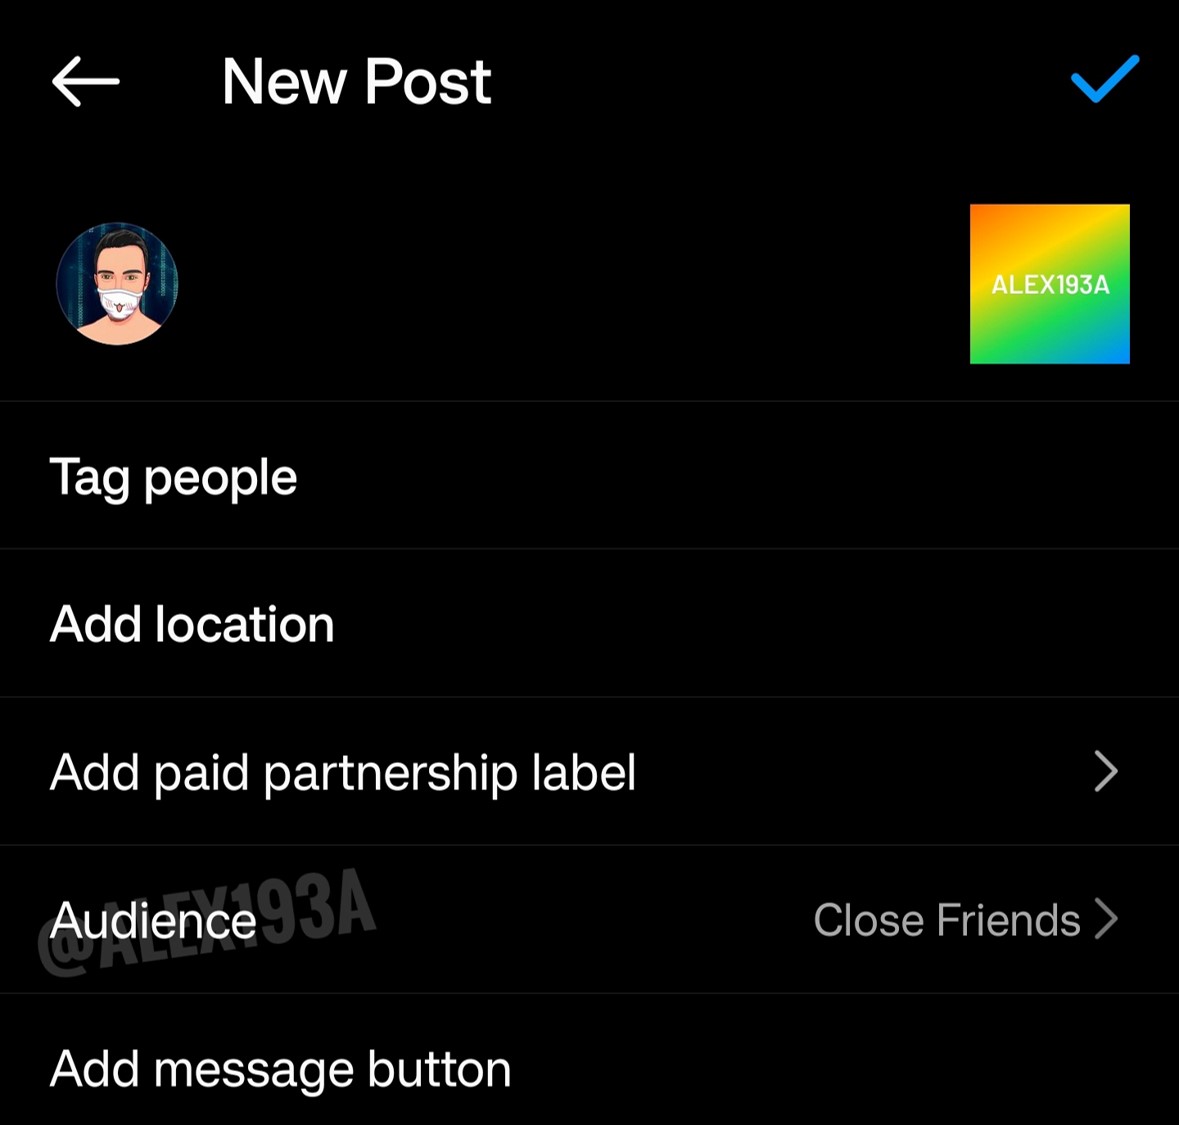 Instagram estaría probando la función "Mejores amigos" para compartir contenido en un perfil. (Twitter/@alex193a)